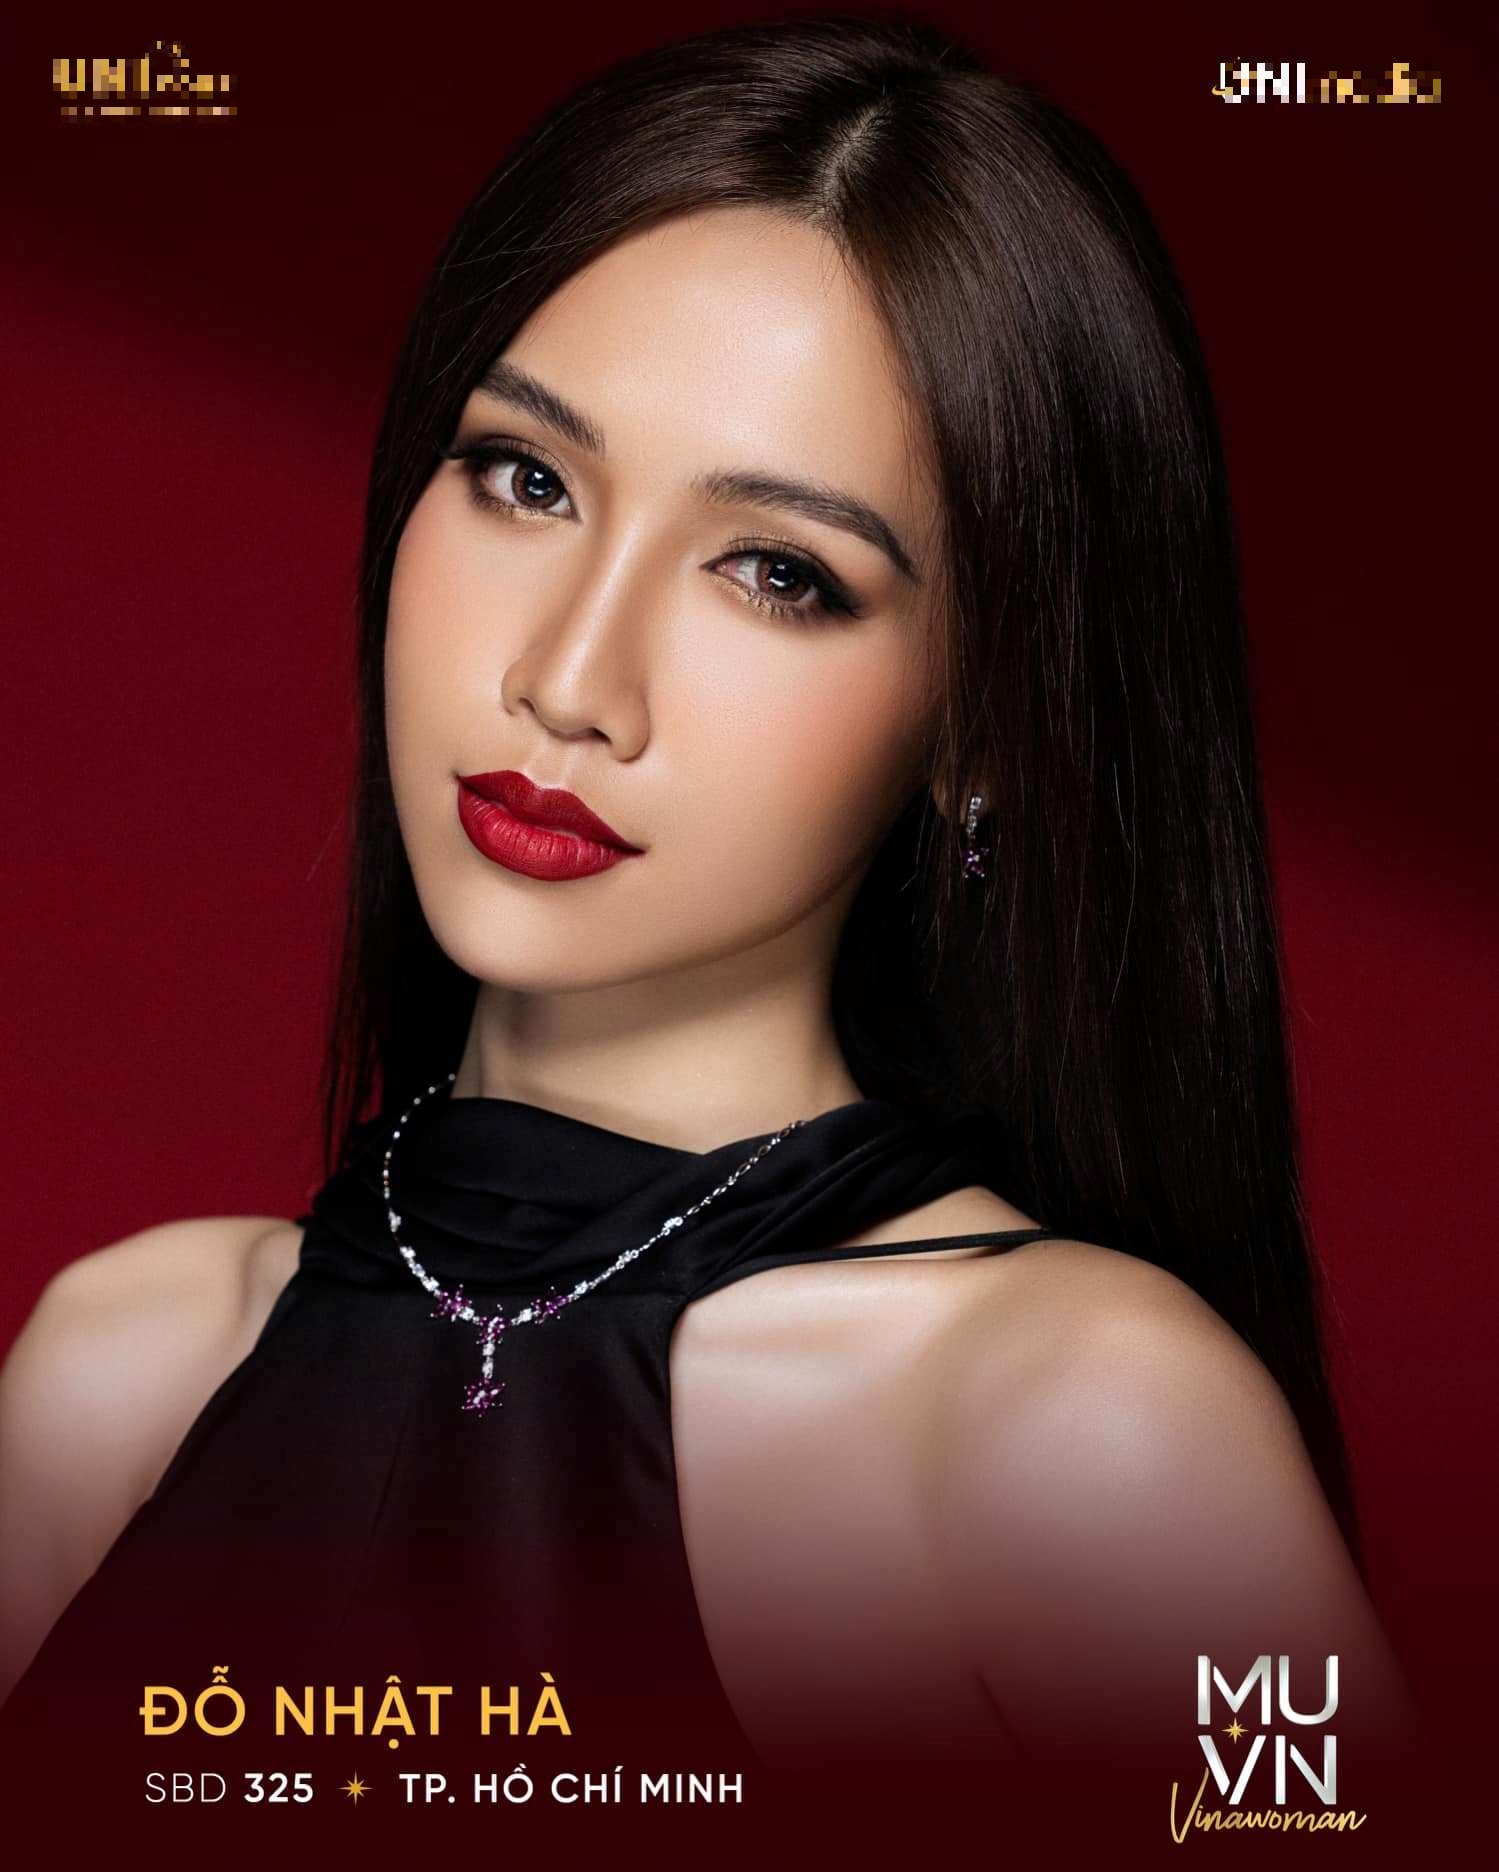 Đỗ Nhật Hà, người đẹp chuyển giới tại Hoa hậu Hoàn vũ Việt Nam là ai?